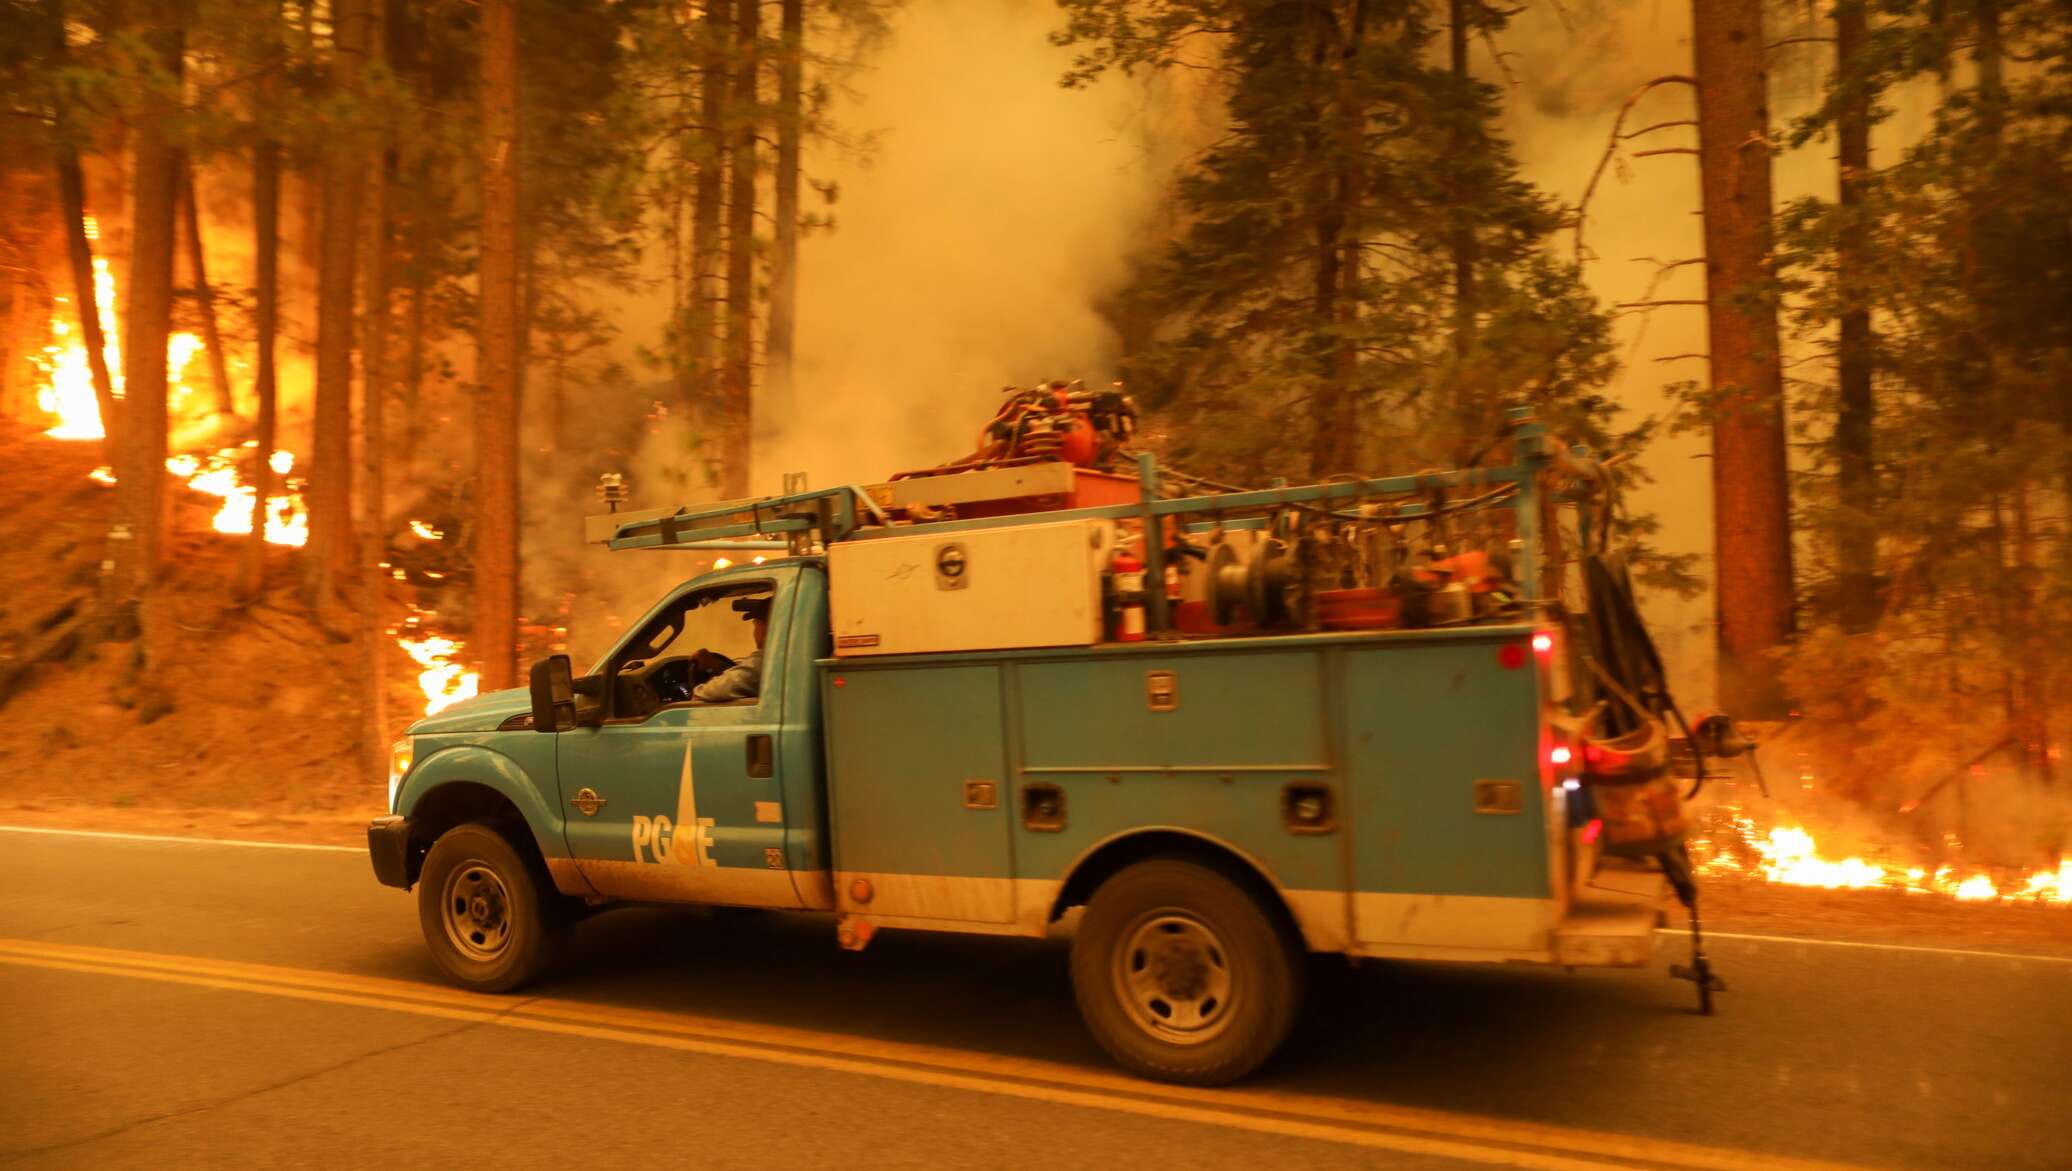 Пожар в дикси. Пожар Дикси в Калифорнии. Пожарный Калифорния. Пожары в Калифорнии. Пожары в Калифорнии (2018).